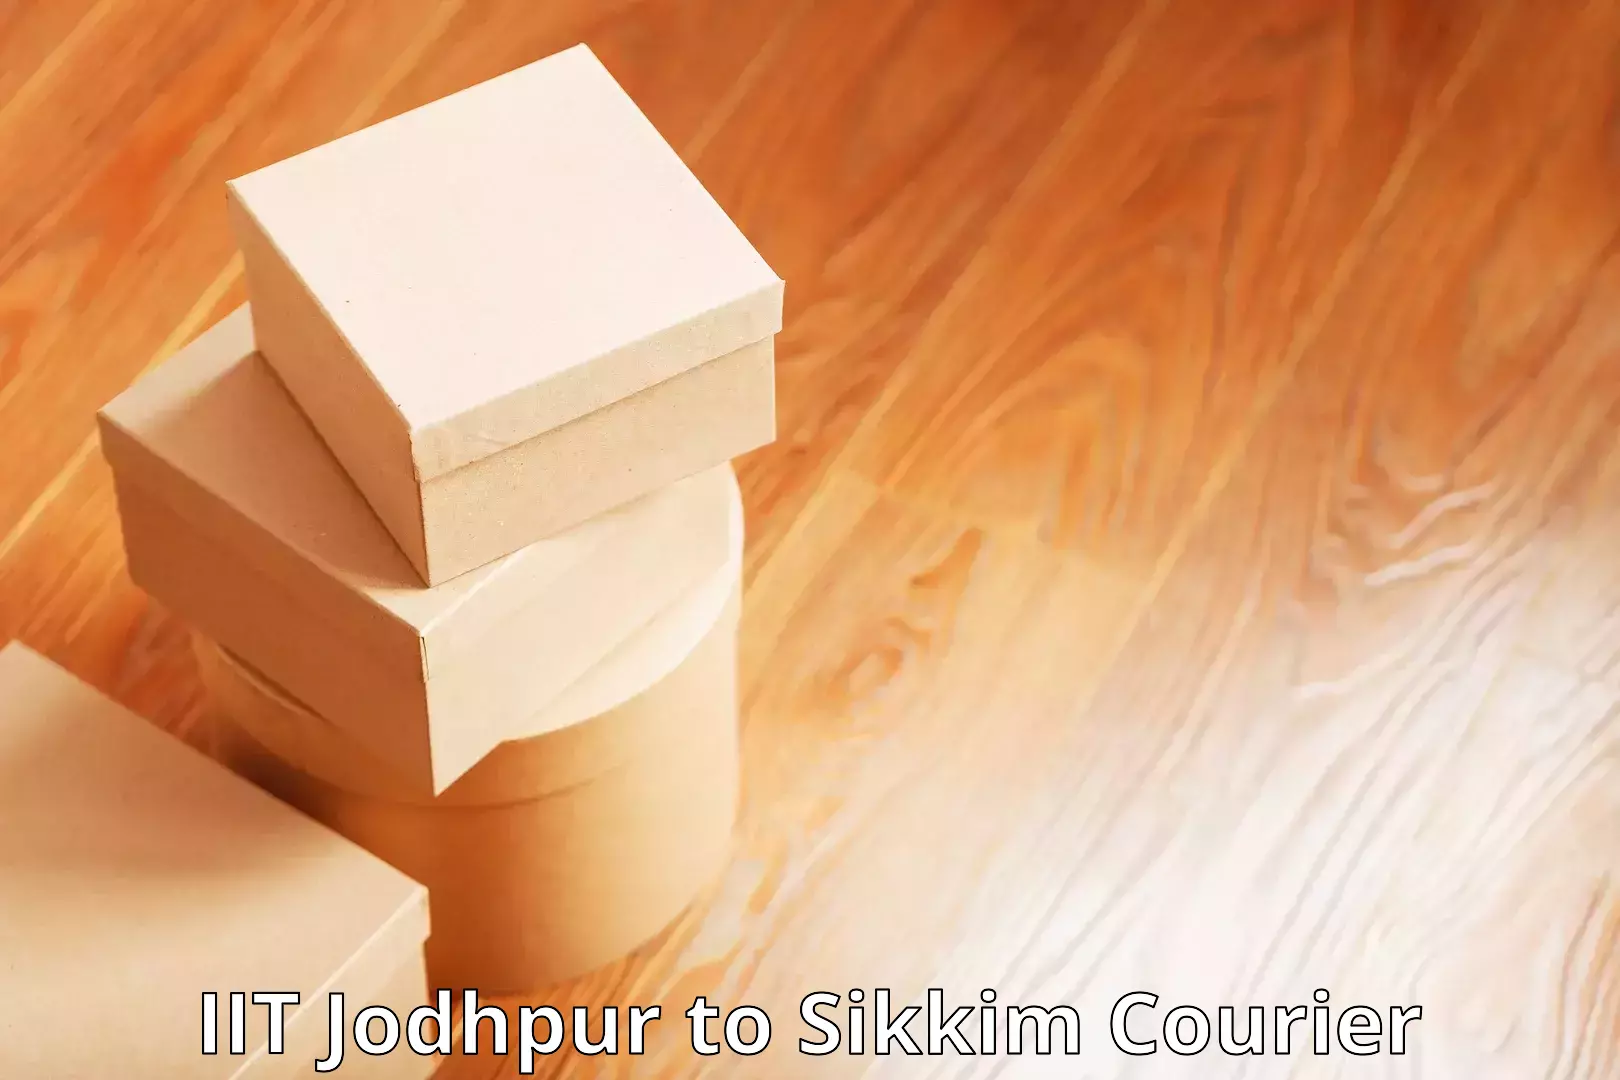 Customer-centric shipping in IIT Jodhpur to Gangtok